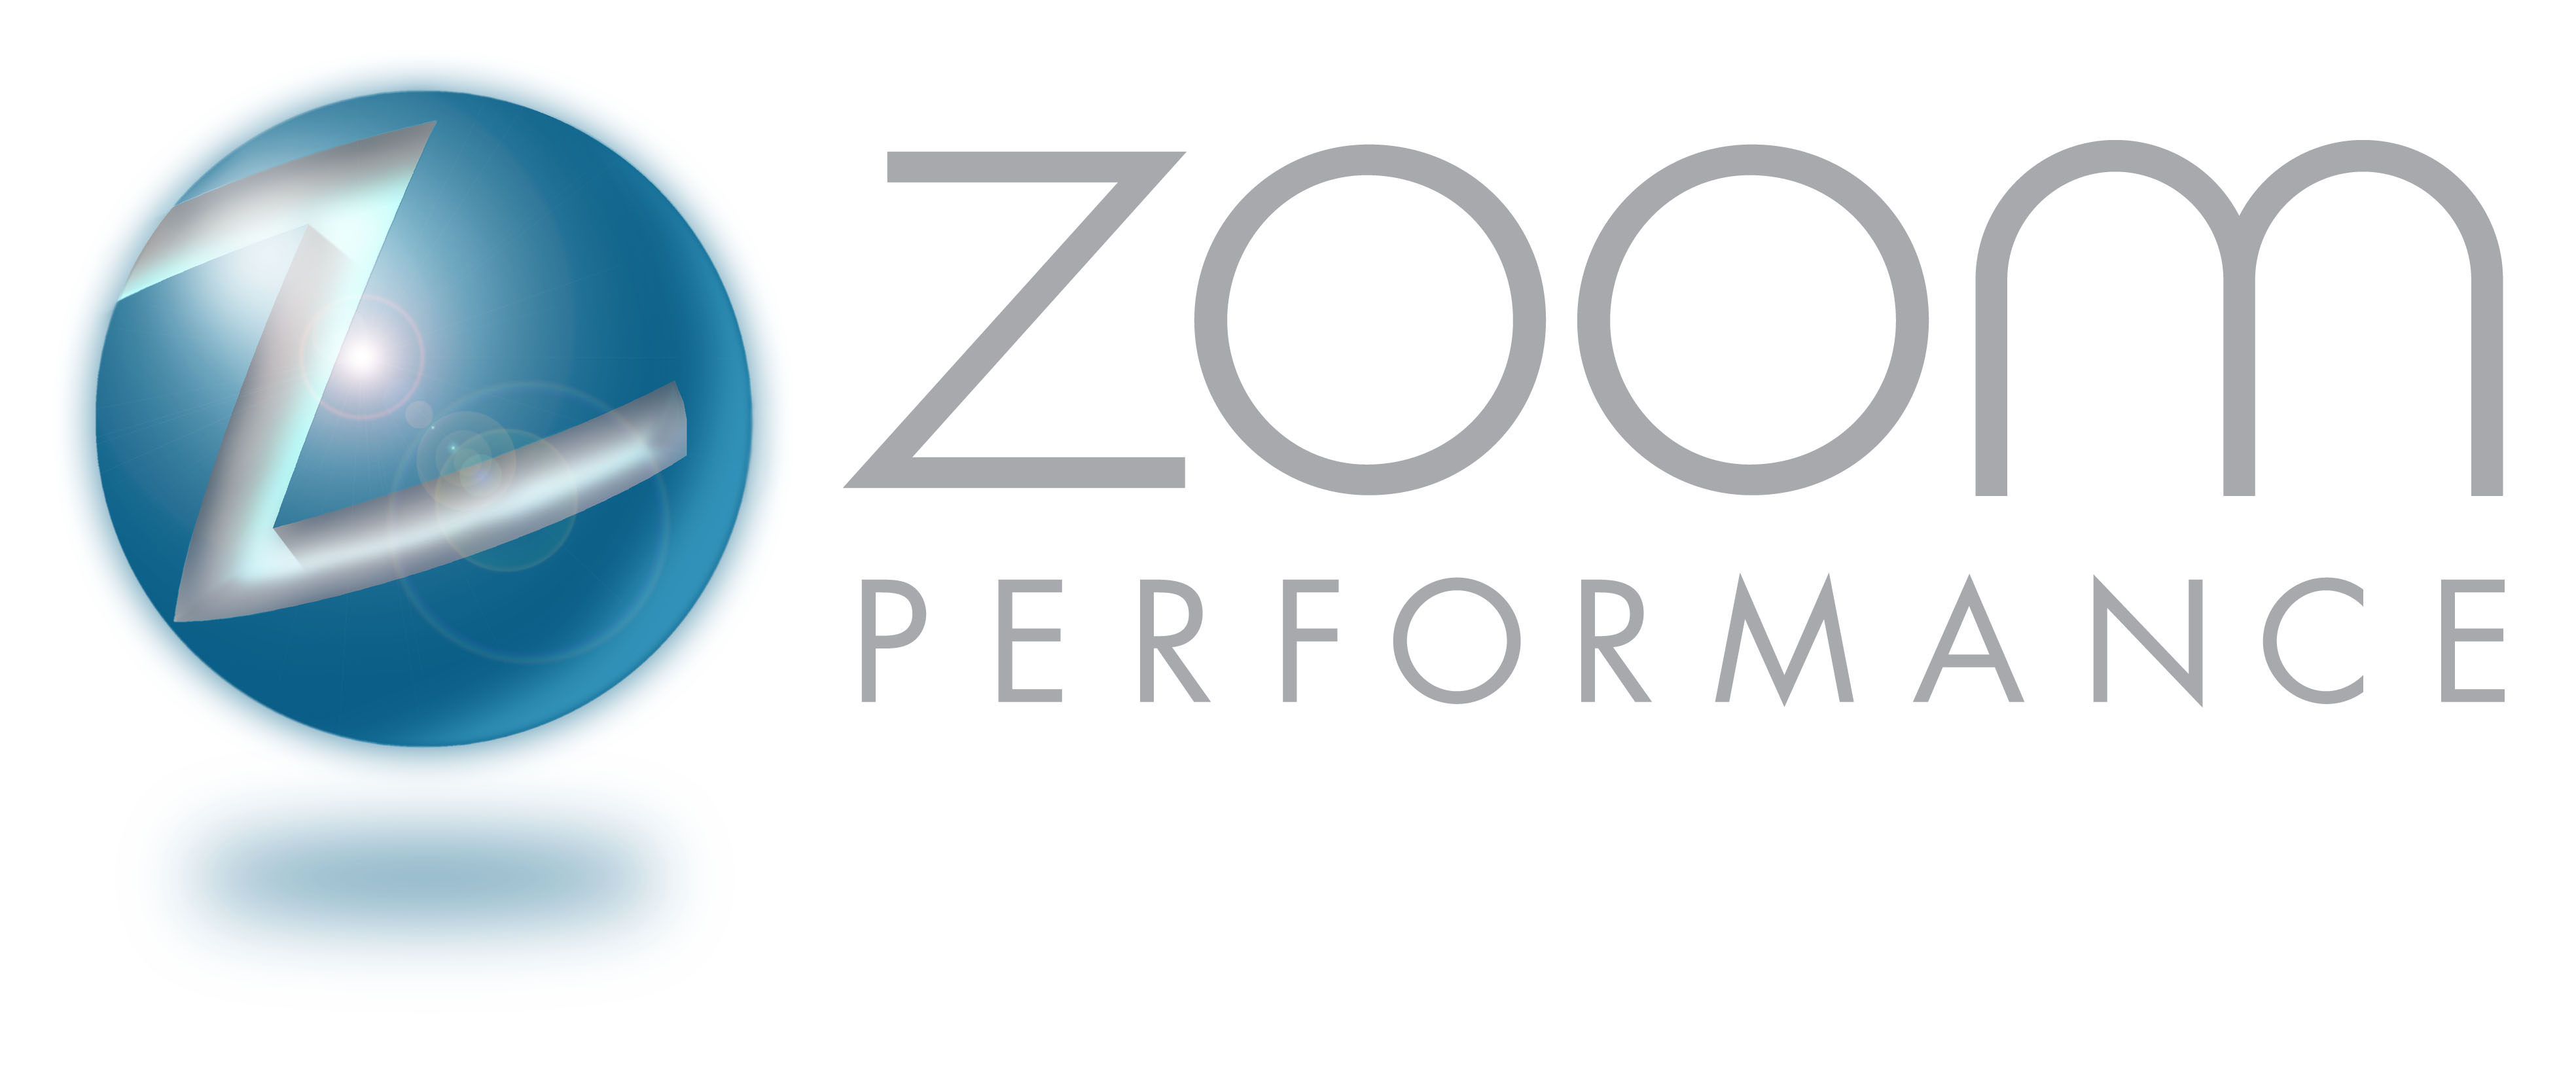 Zoom Performance